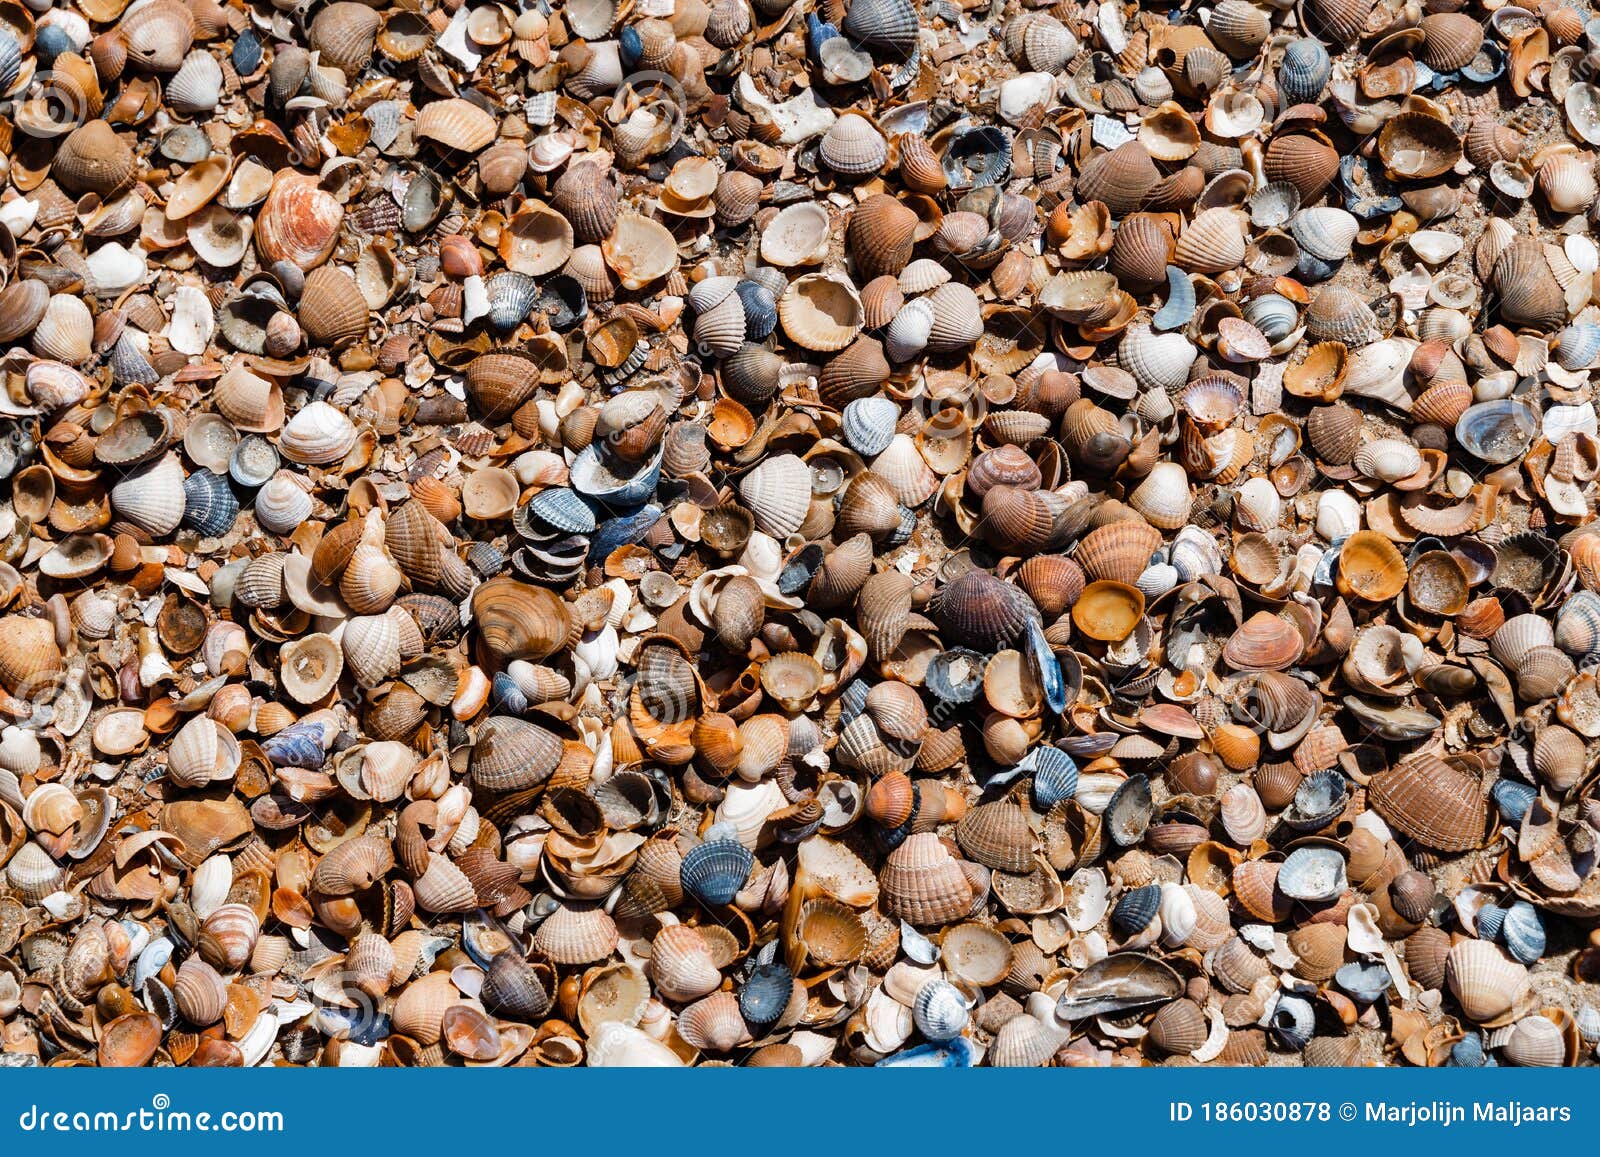 Conchas de recogida en una playa